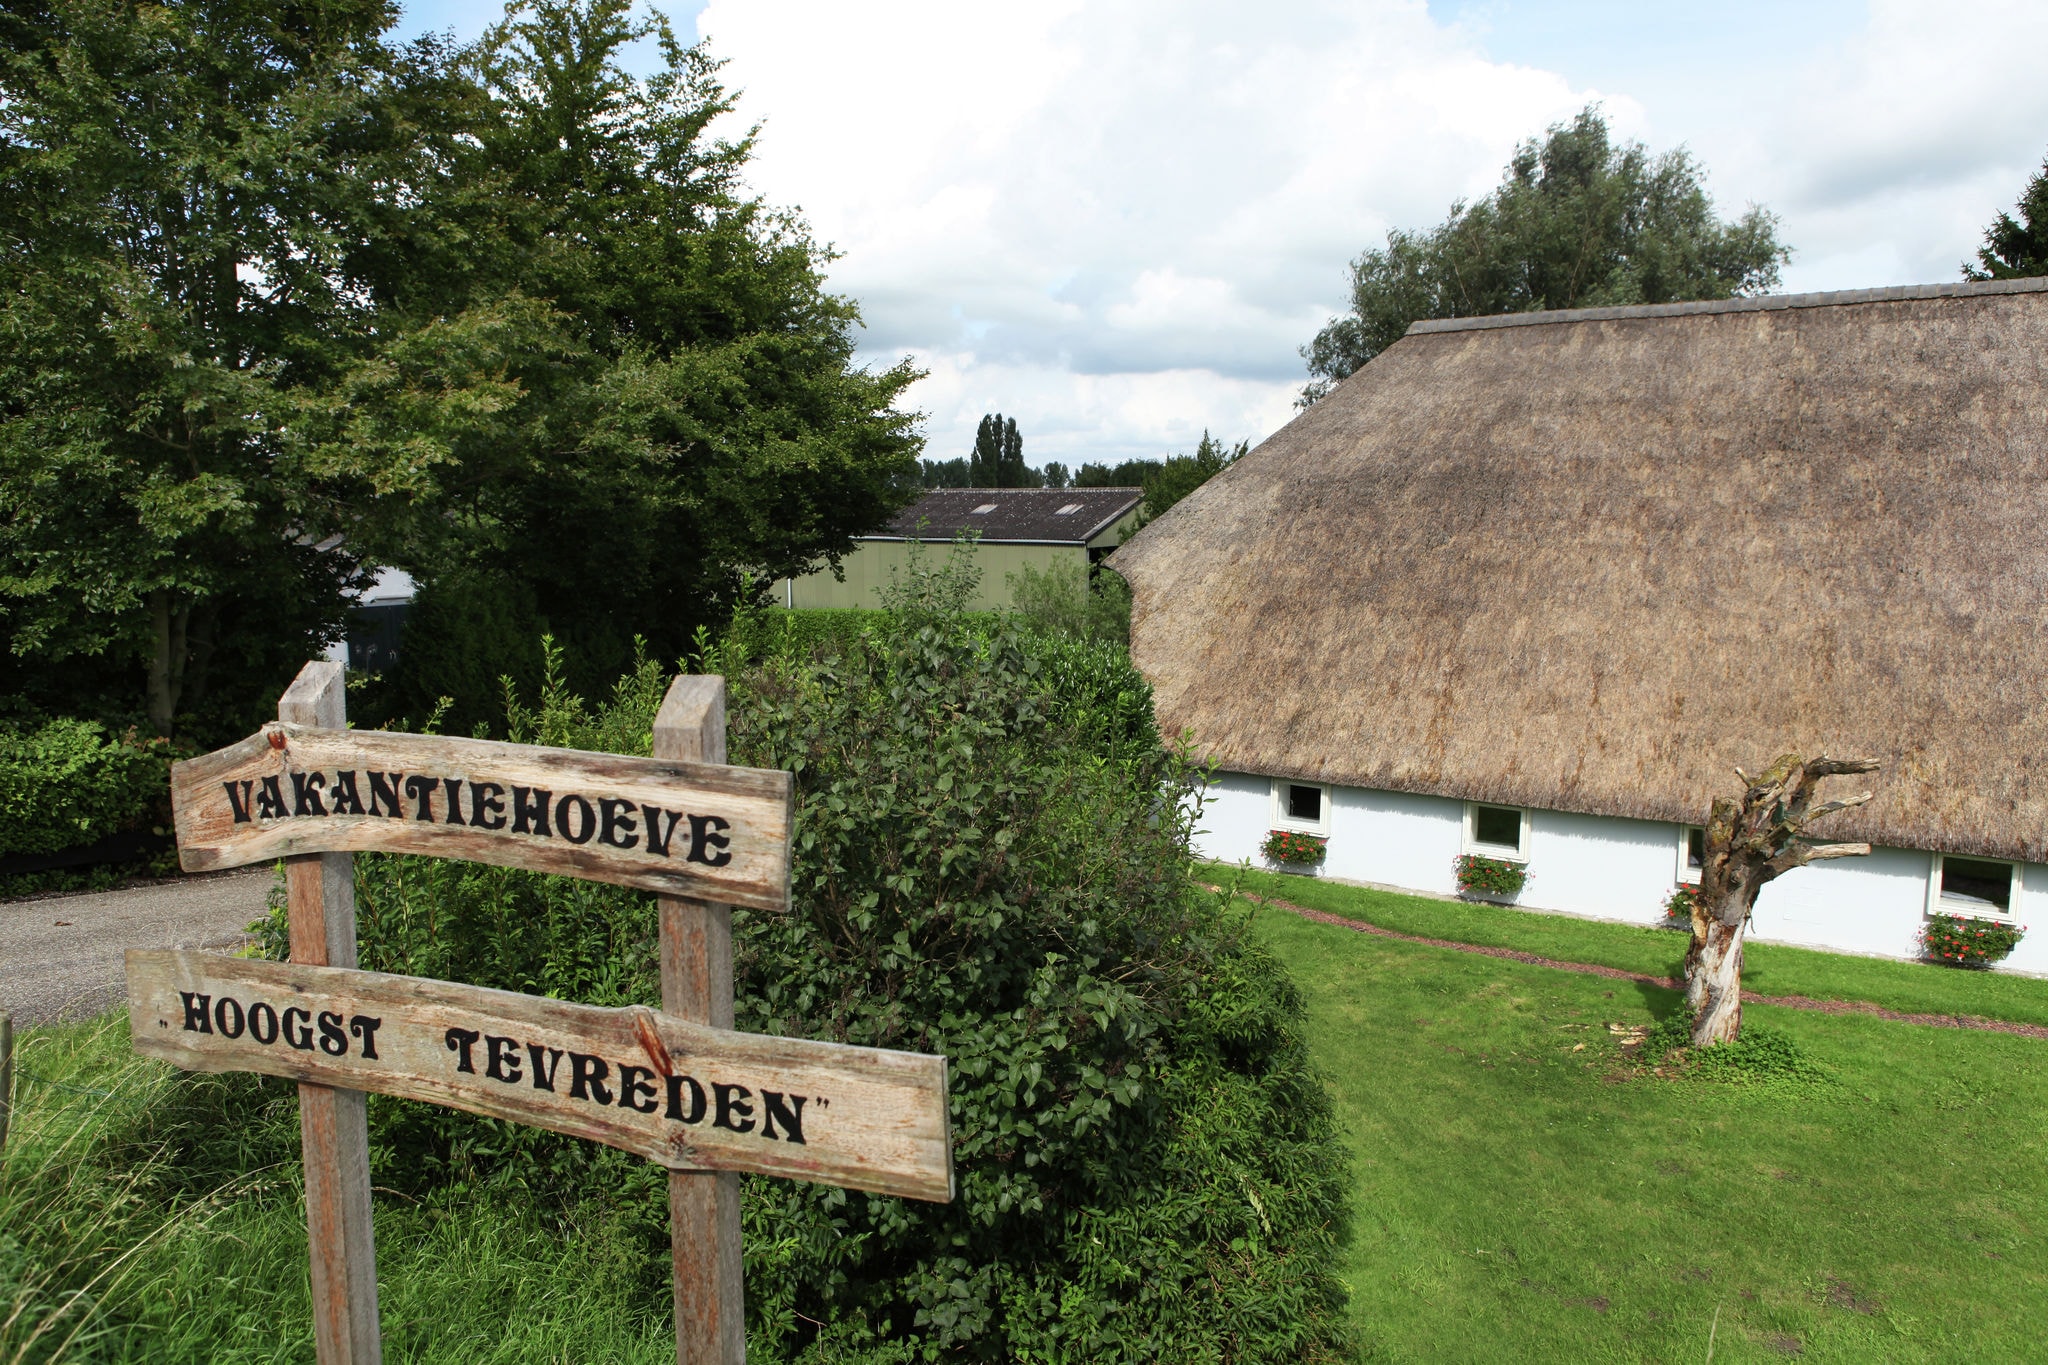 Idyllisches Bauernhaus in Oosterwijk nahe dem Fluss